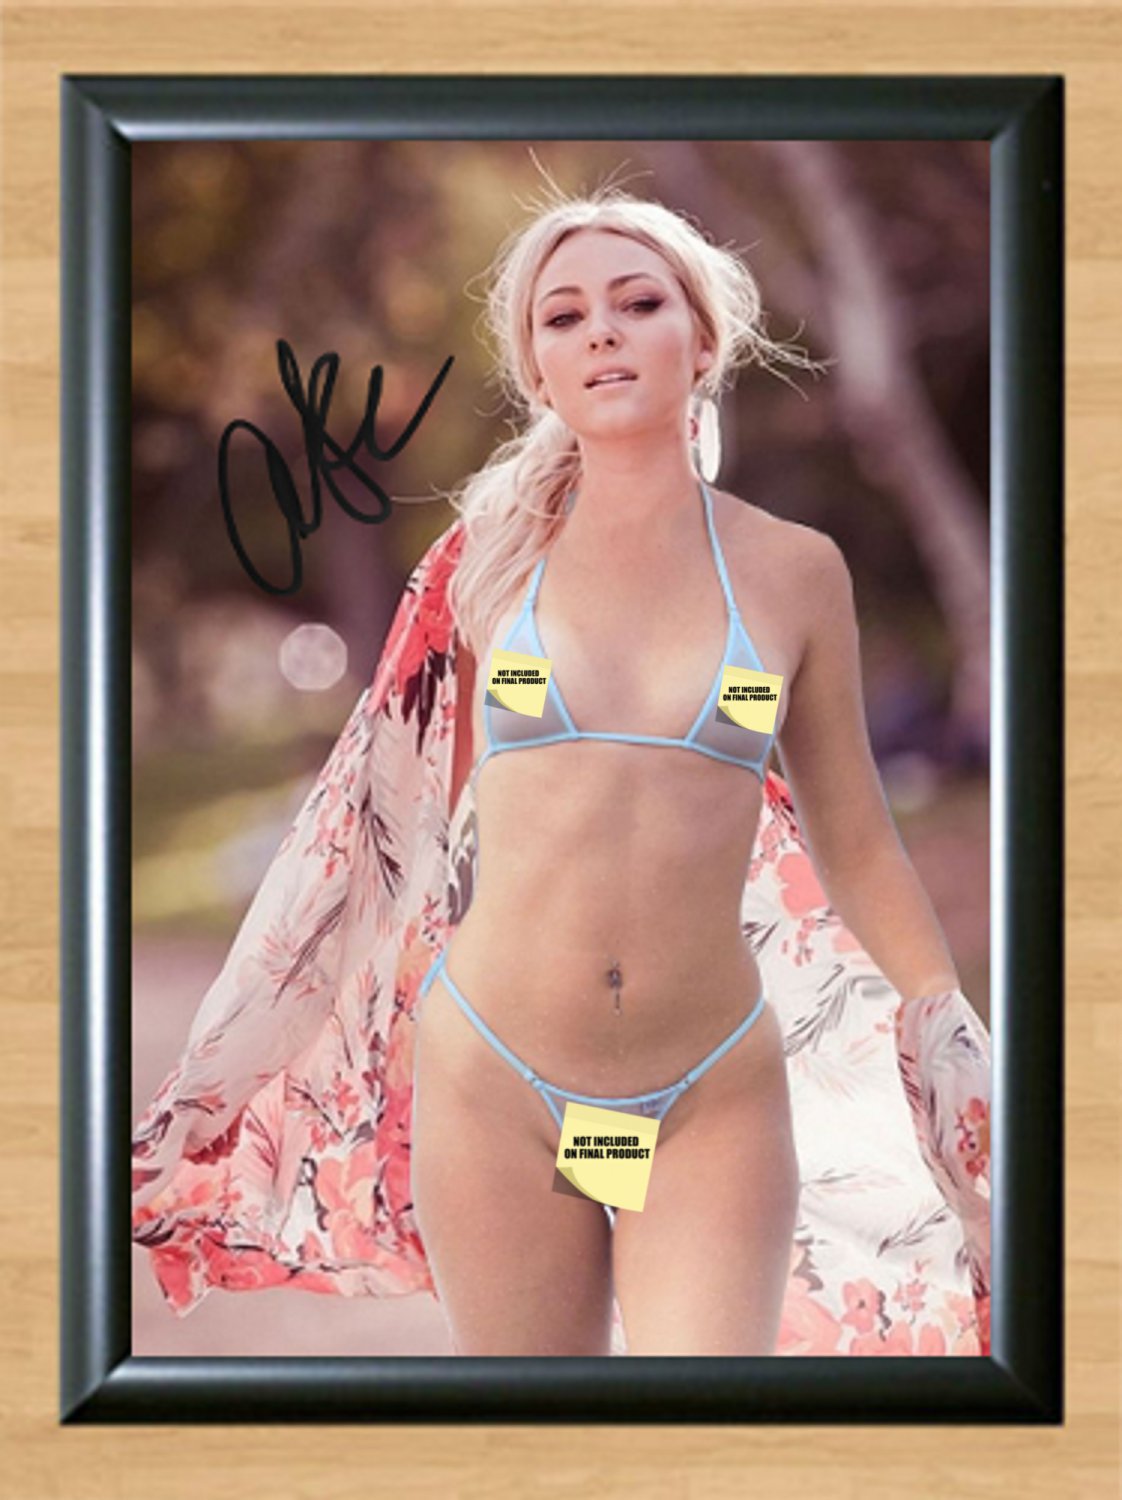 Annasophia Robb Bikini Nude Signed Autographed Photo Poster Print  Memorabilia A4